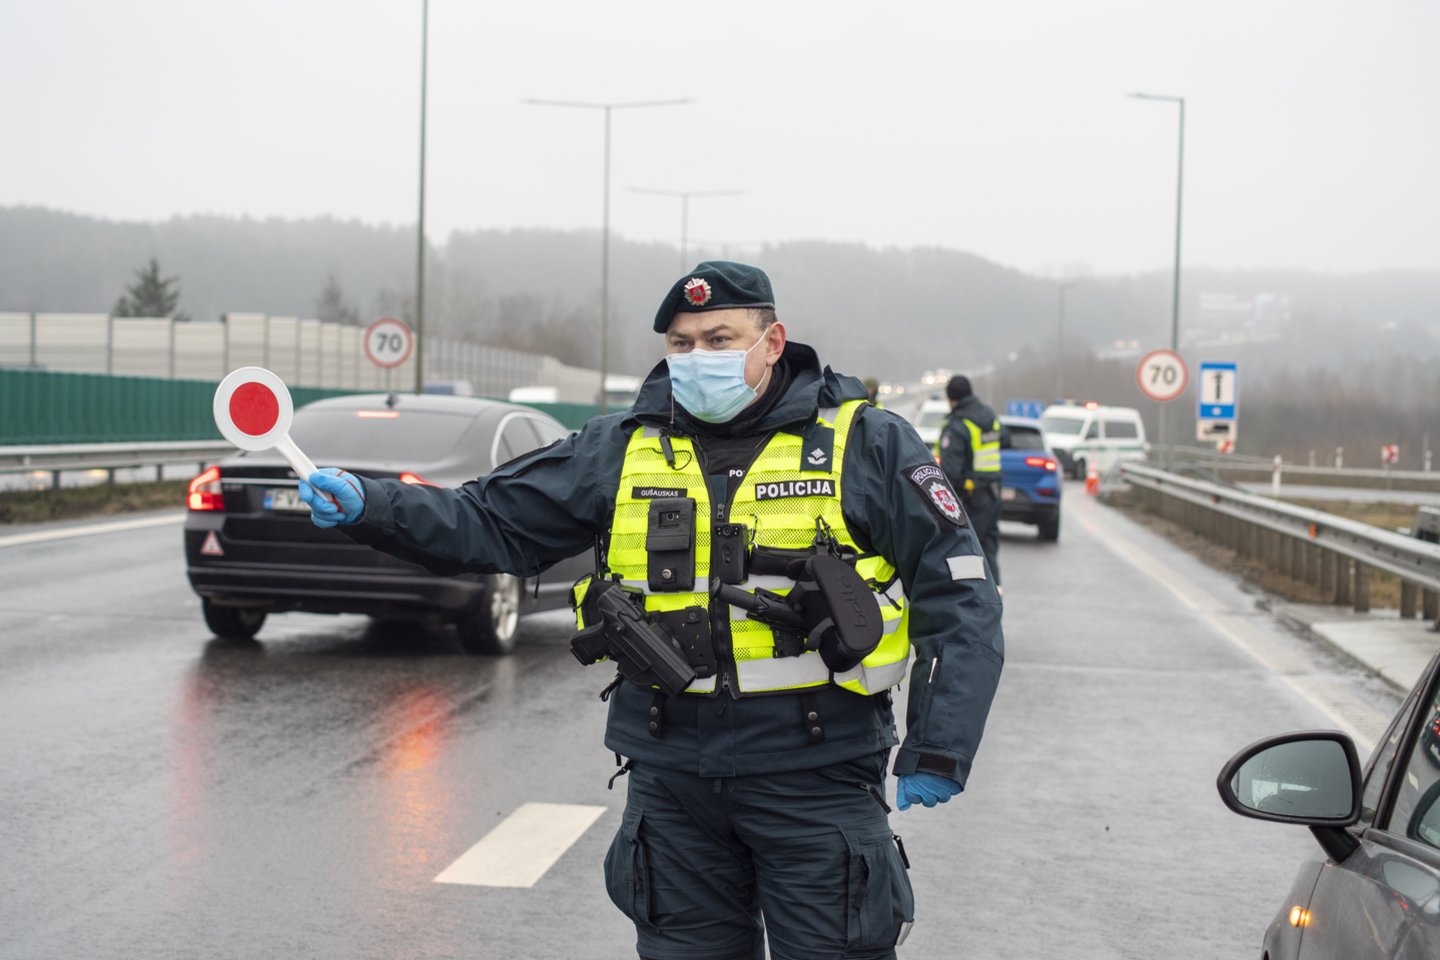 Kauno apskrities vyriausiojo policijos komisariato Kelių policijos valdybos pareigūnai, žvelgdami į eismo saugumo situaciją 2020 m., pastebi pozityvių tendencijų.<br>V.Ščiavinsko nuotr.